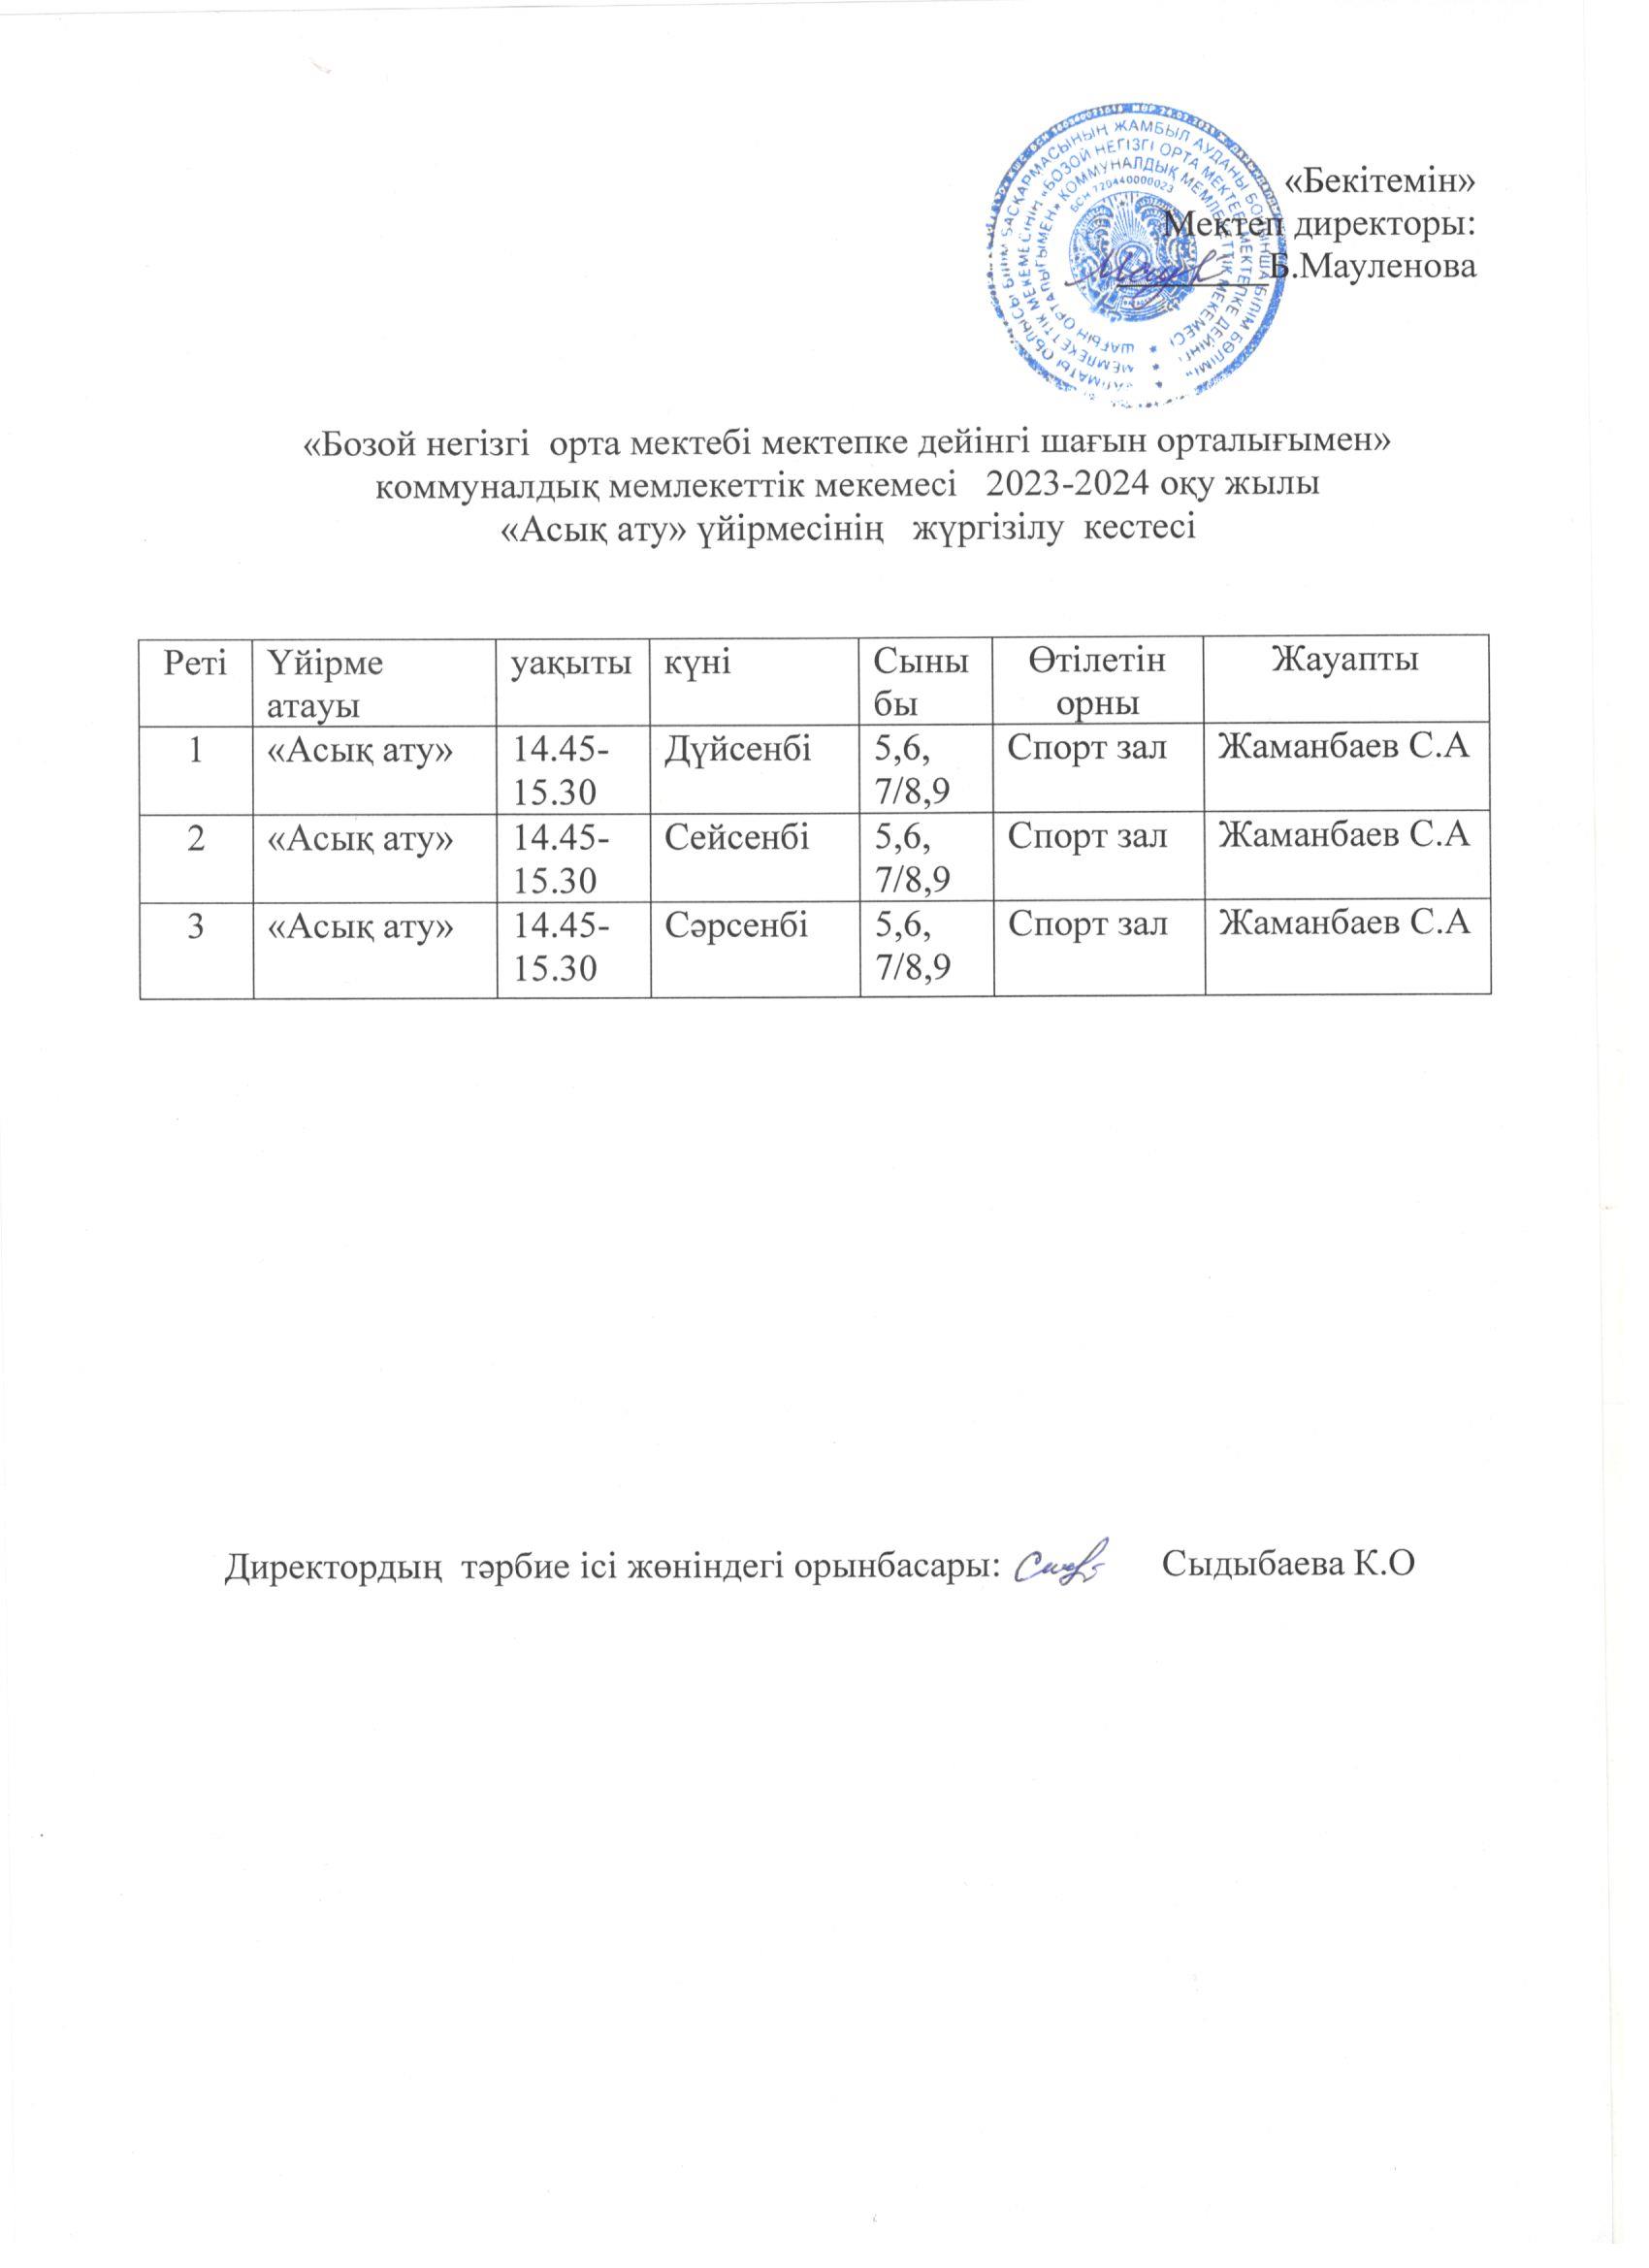 Факультатив сабақтар 2023-2024 ж